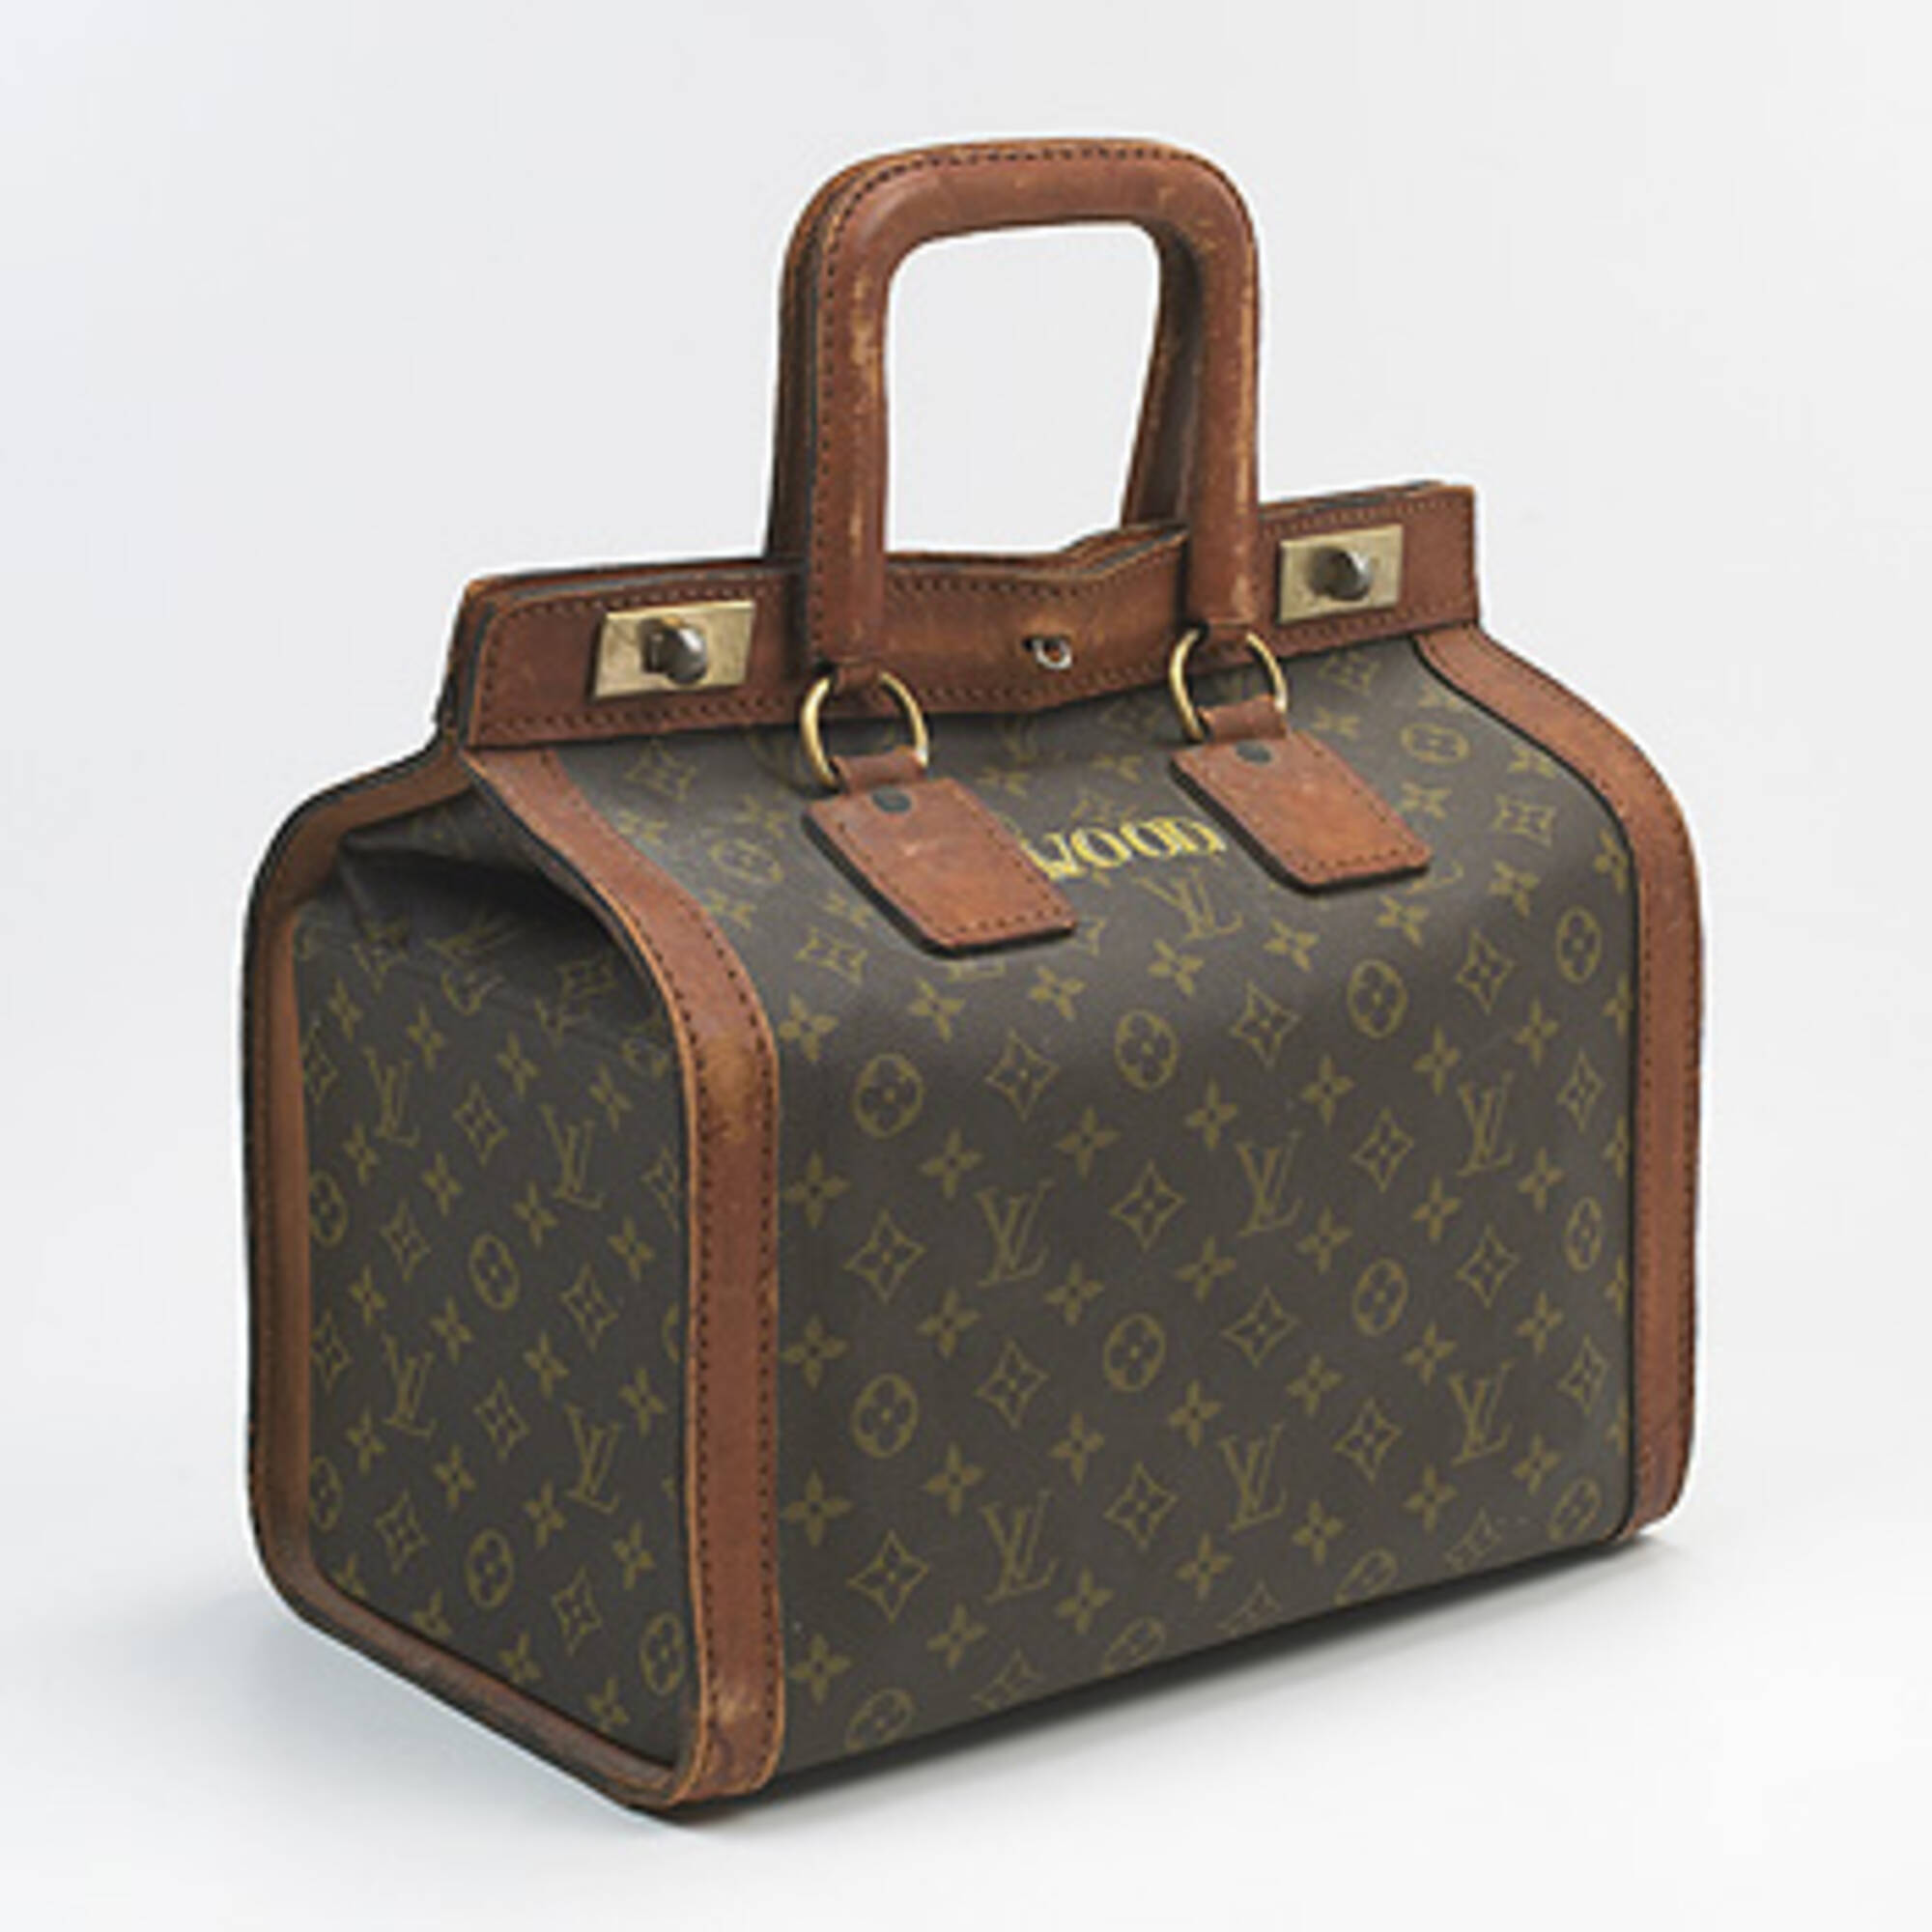 Sold at Auction: Vintage Louis Vuitton Monogram Briefcase